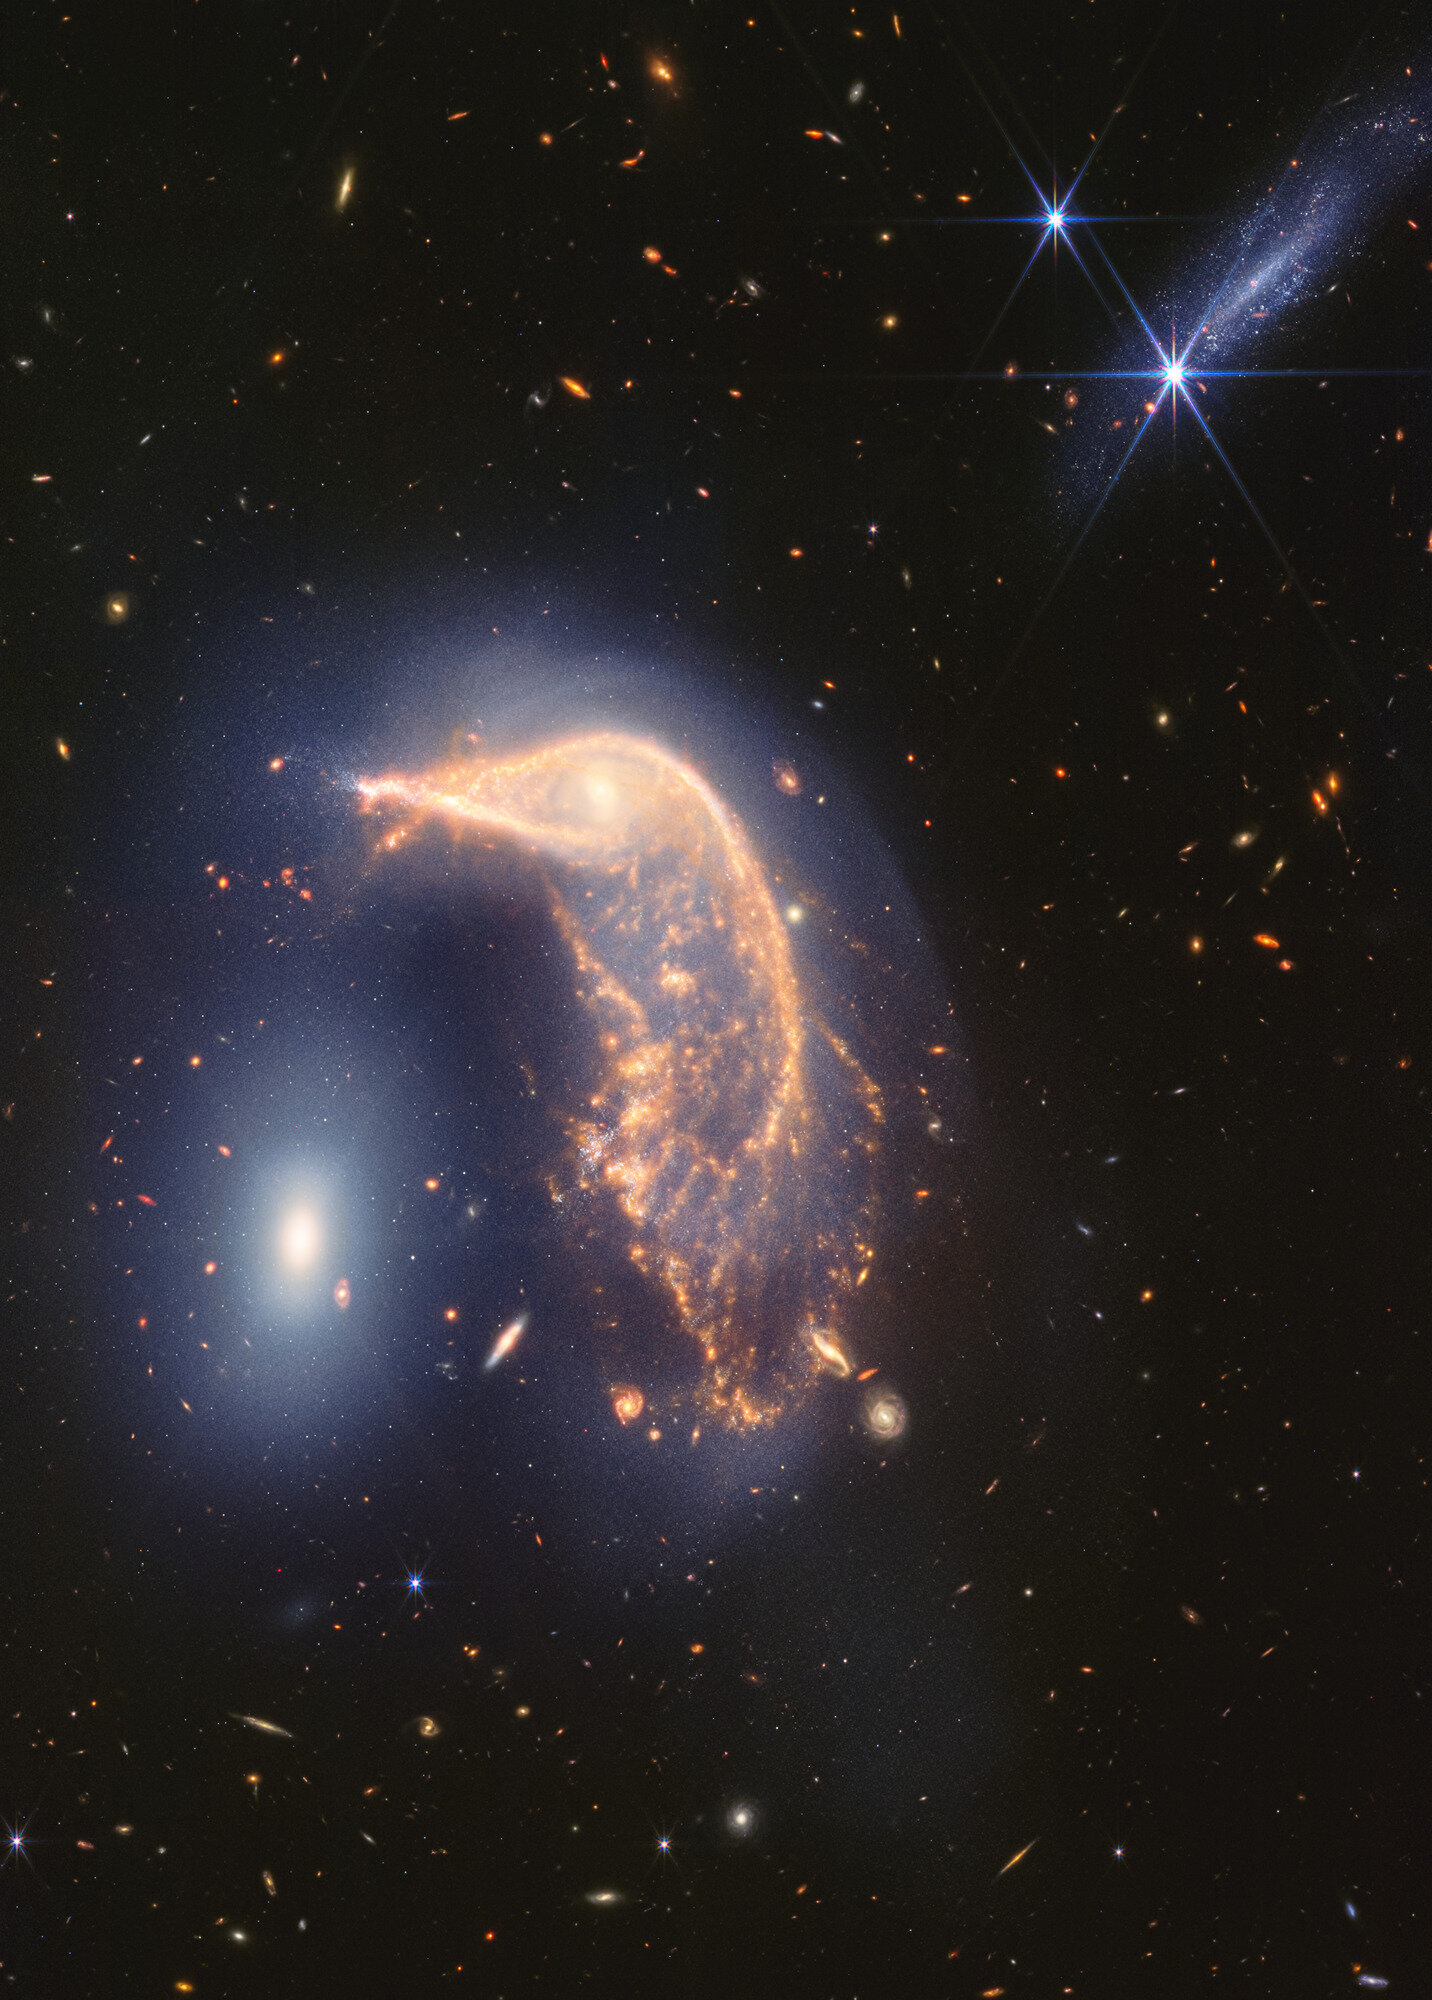 Пингвин и Яйцо: «Джеймс Уэбб» обновил изображение «танцующих» галактик Arp 142